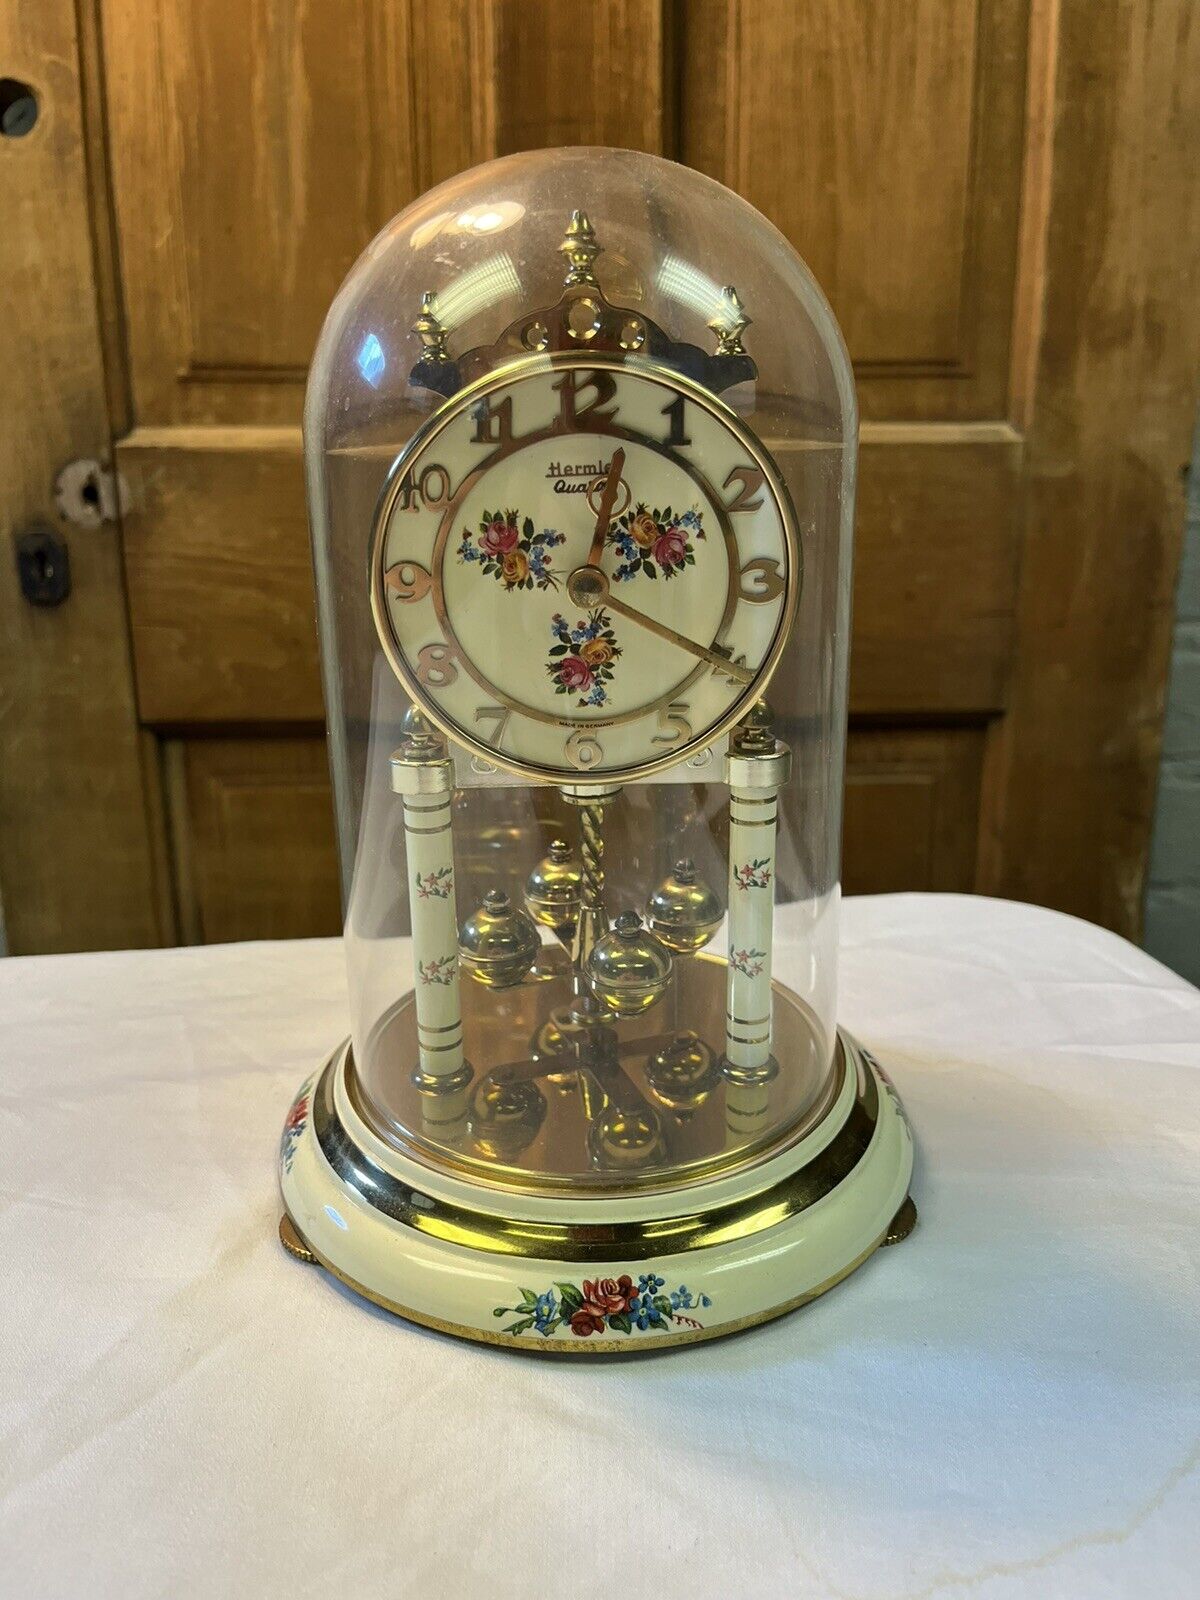 Hermie Quartz Anniversary Clock